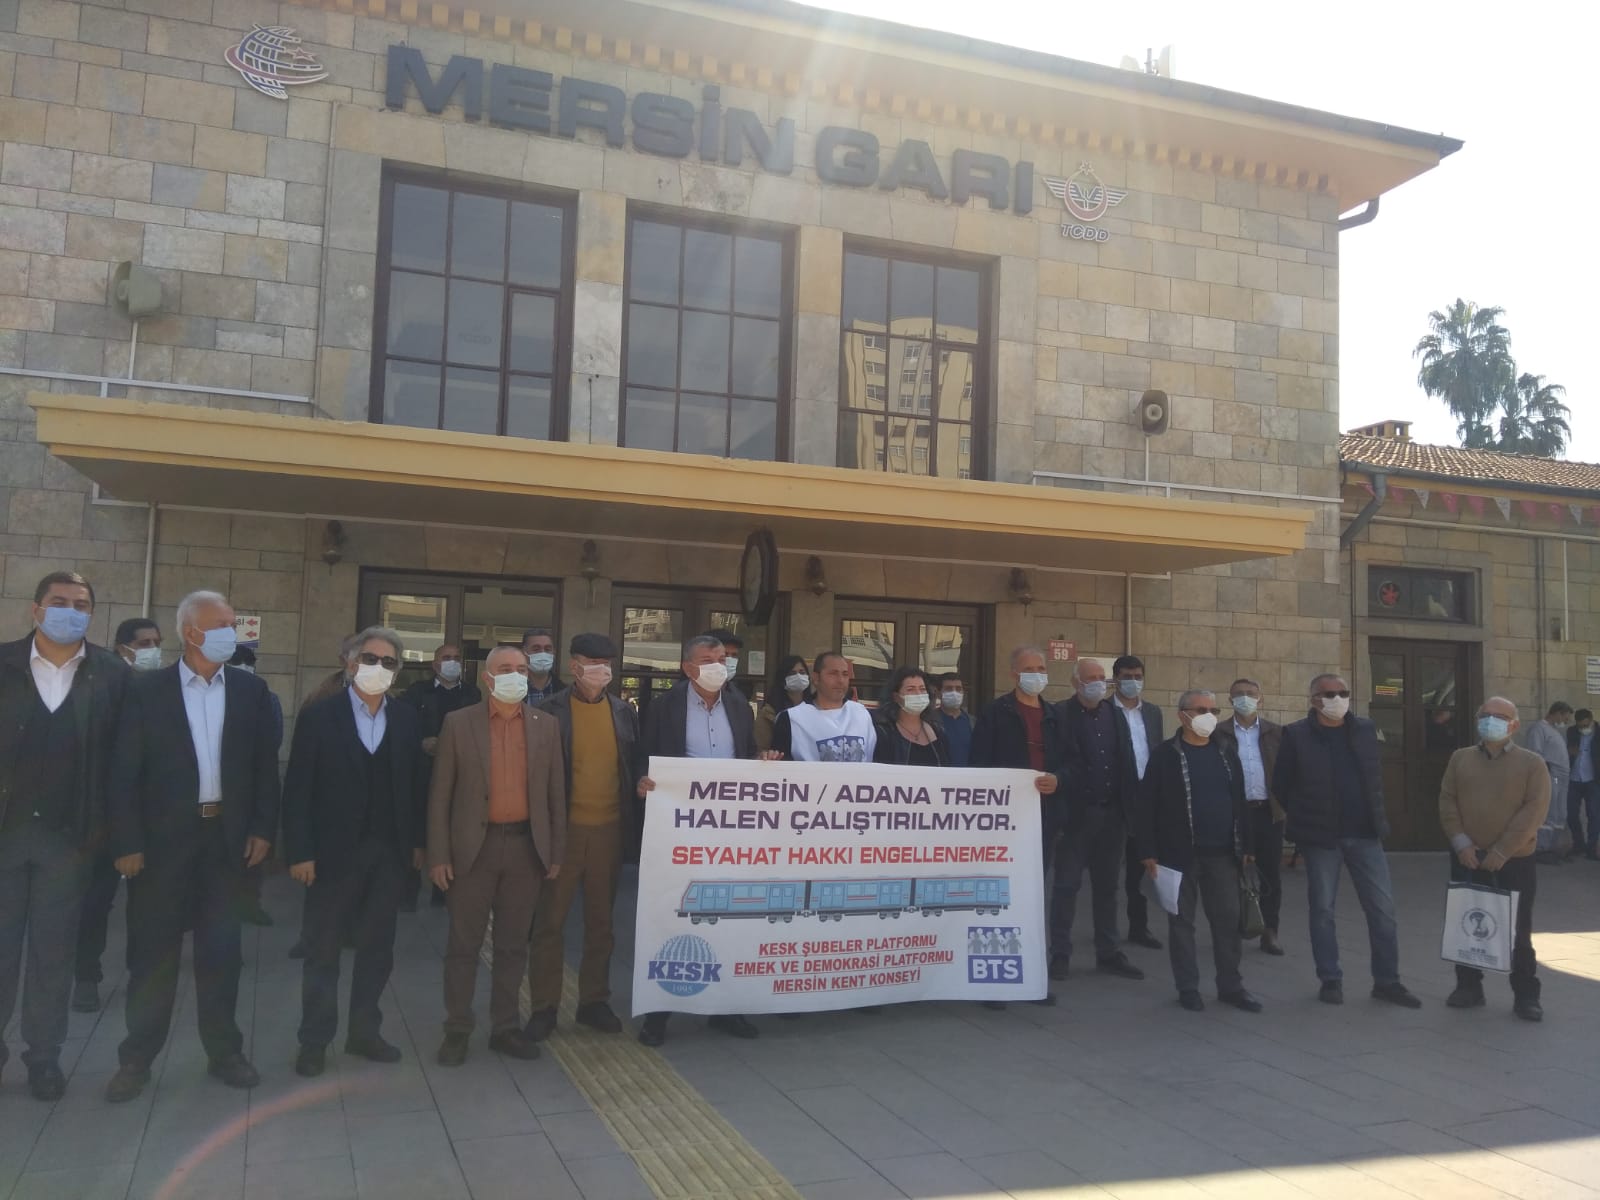 KESK Mersin Şubeler Platformu, Emek ve Demokrasi Platformu, Kent Konseyi: Mersin-Adana Treni Çalıştırılmıyor, Seyahat Hakkı Engellenemez